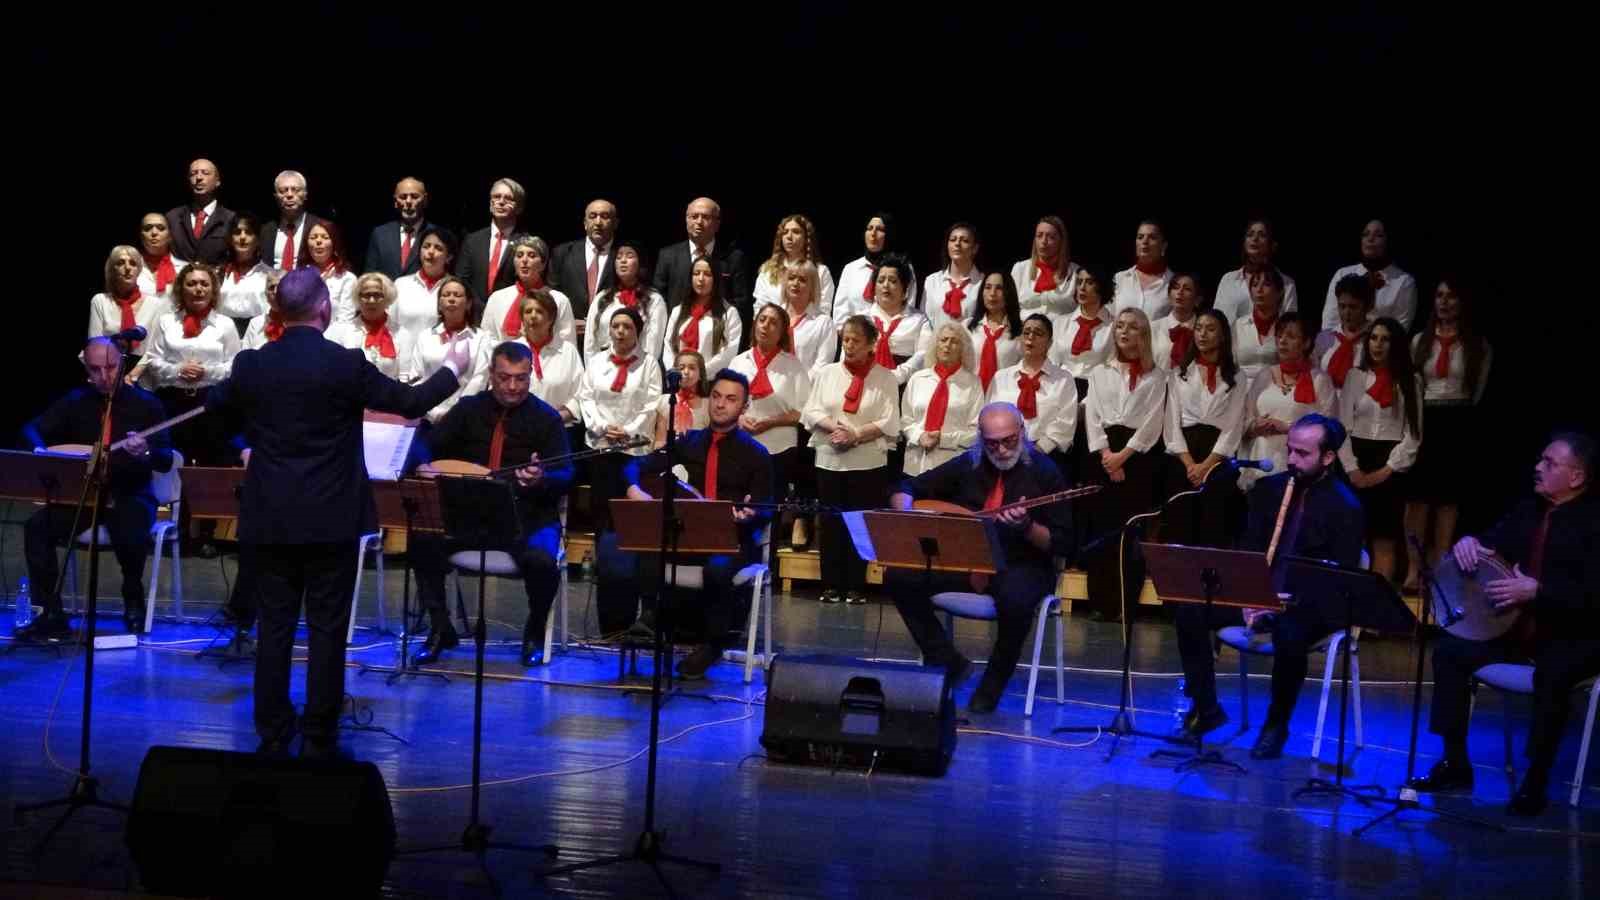 sinop’ta cumhuriyet’in 100. yılına özel halk müziği konseri düzenlendi